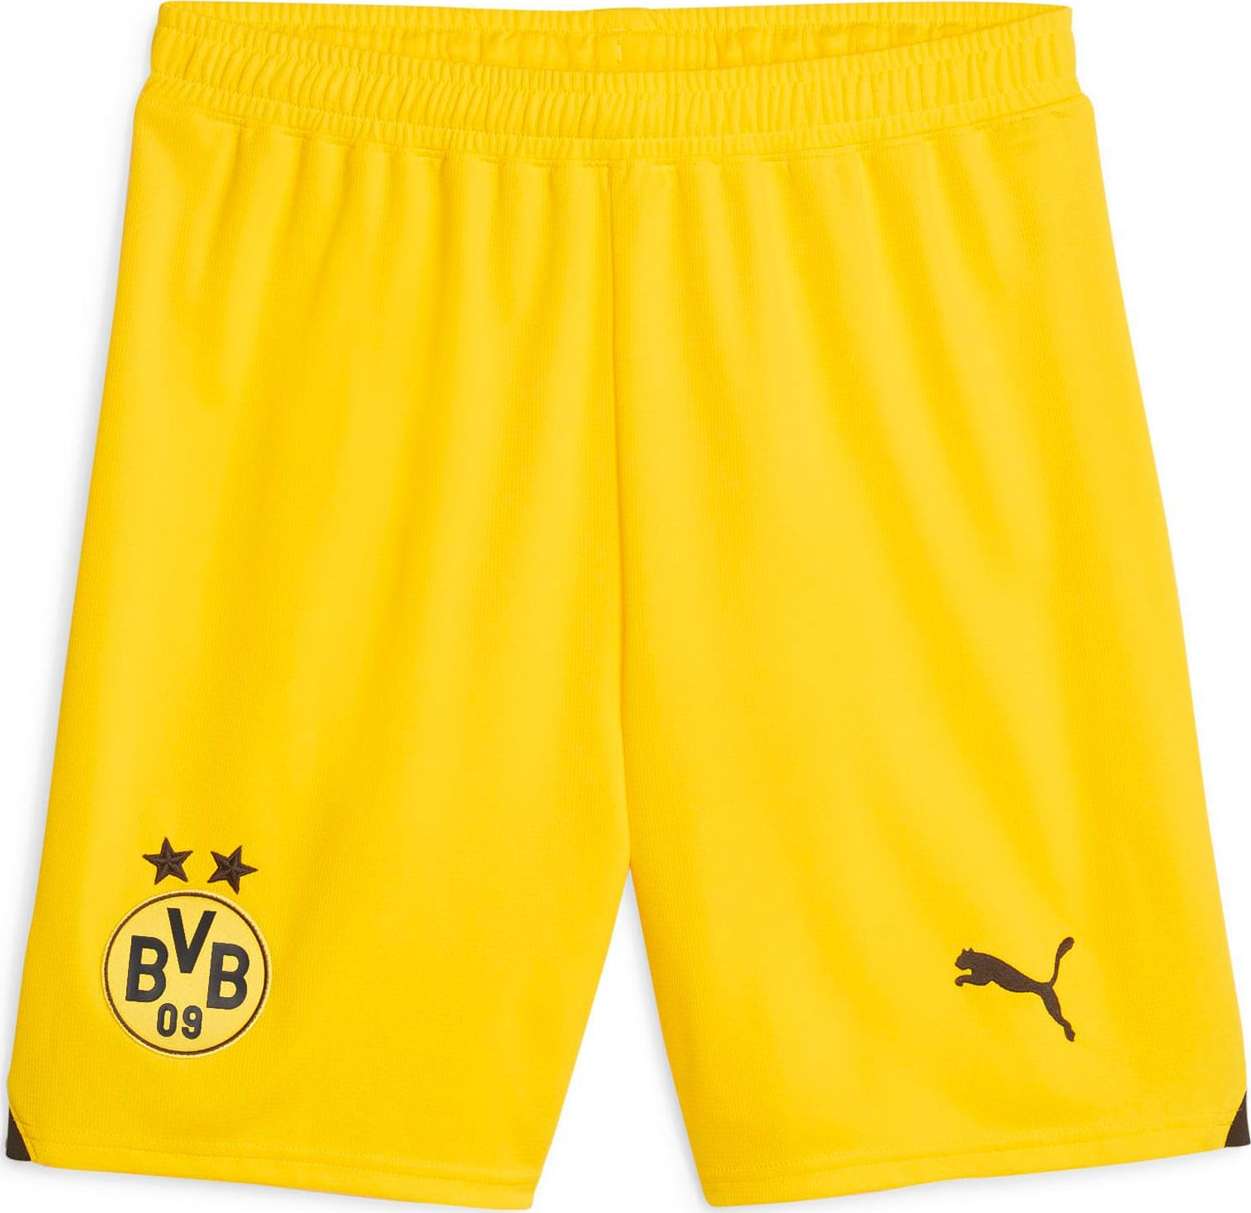 Sportovní kalhoty 'Borussia Dortmund' Puma žlutá / černá